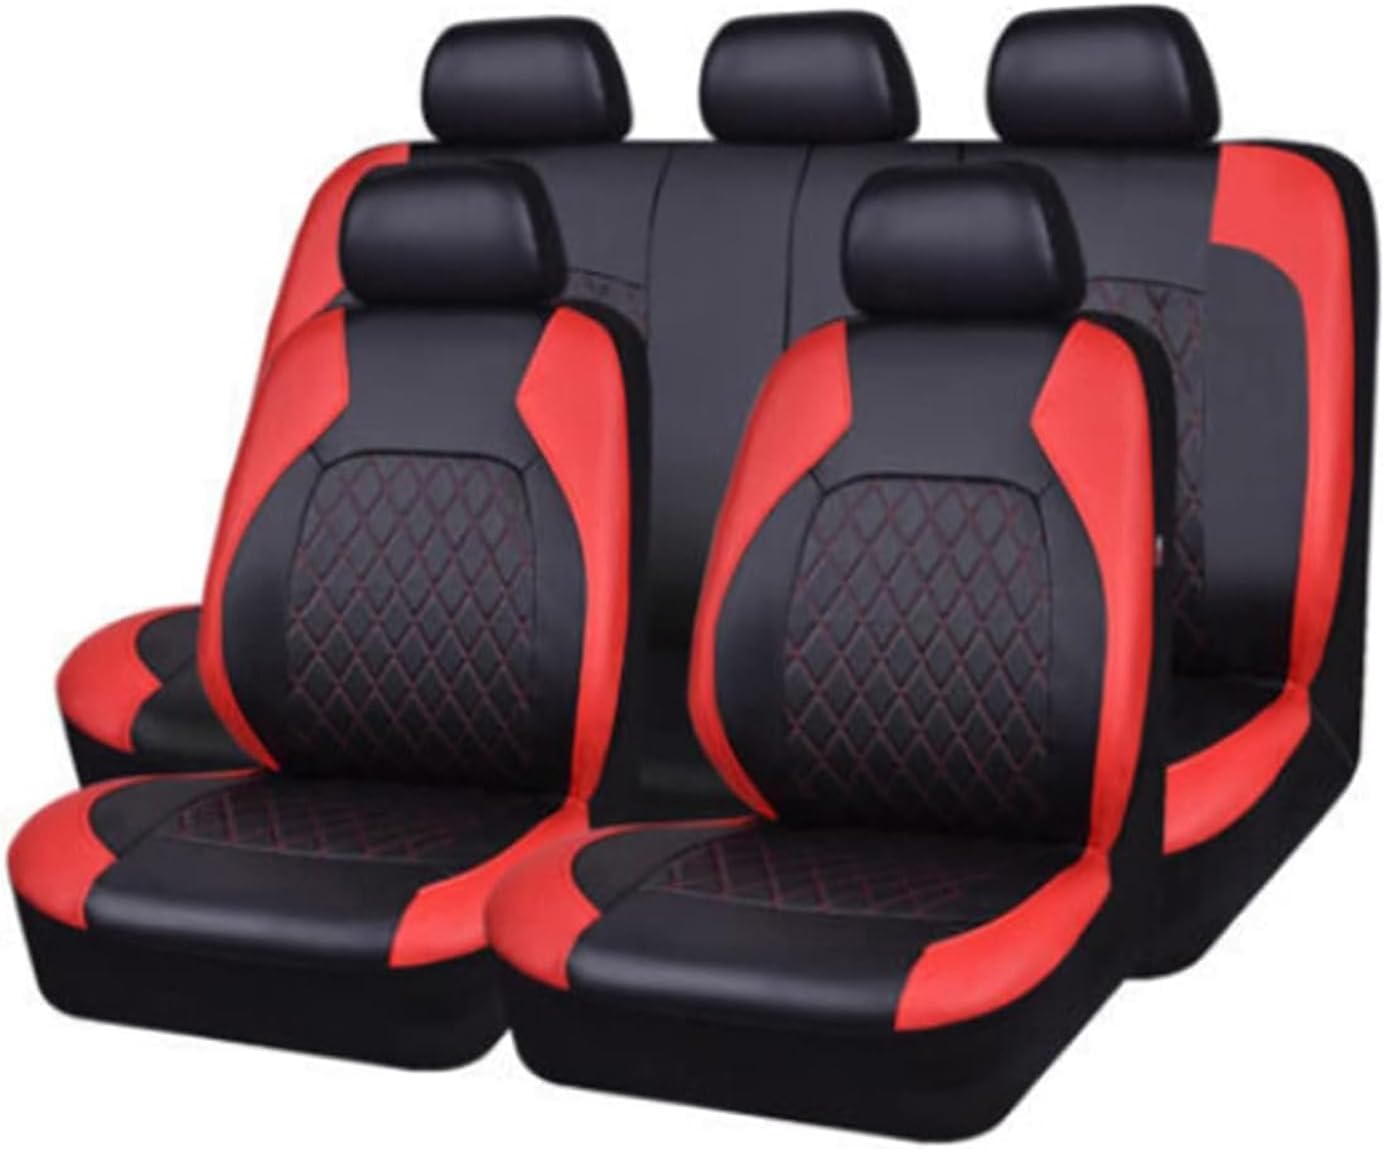 Auto Leder Sitzbezüge für Volvo Xc60 V50 V70 S60 S40 Xc70 C30 Xc90 S80, 9 Stück Allwetter rutschfest Wasserdicht Atmungsaktiv Schonbezug Set Sitzkissenschutz,D/red von SARCX